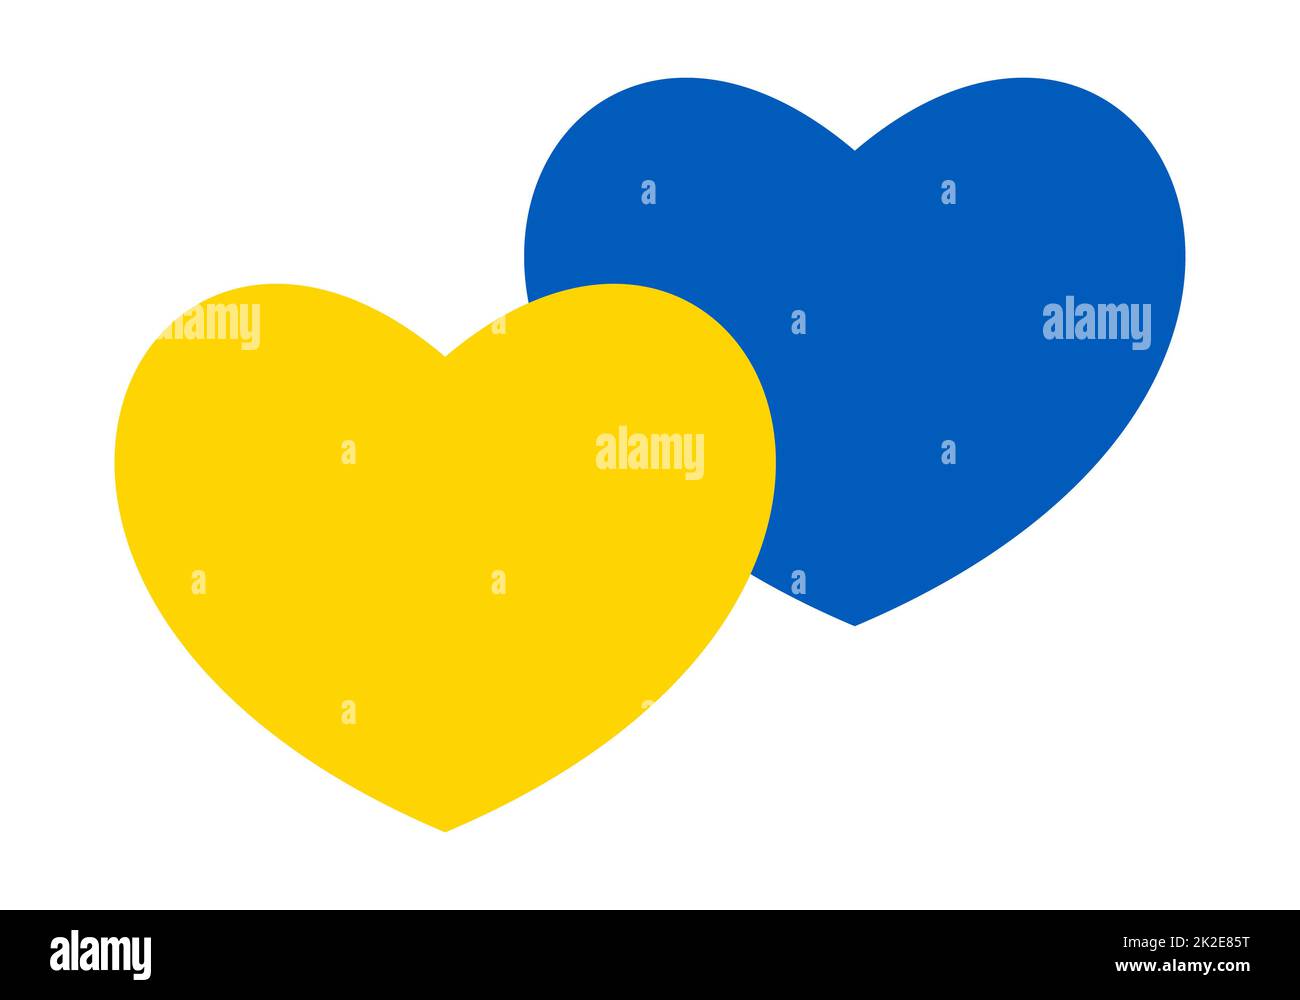 Astratta bandiera patriottica Ucraina con simbolo d'amore. Idea concettuale di pace blu e giallo sotto forma di due cuori. Sostegno al paese durante l'occupazione. Con l'Ucraina nel suo cuore. Stop alla guerra. Foto Stock